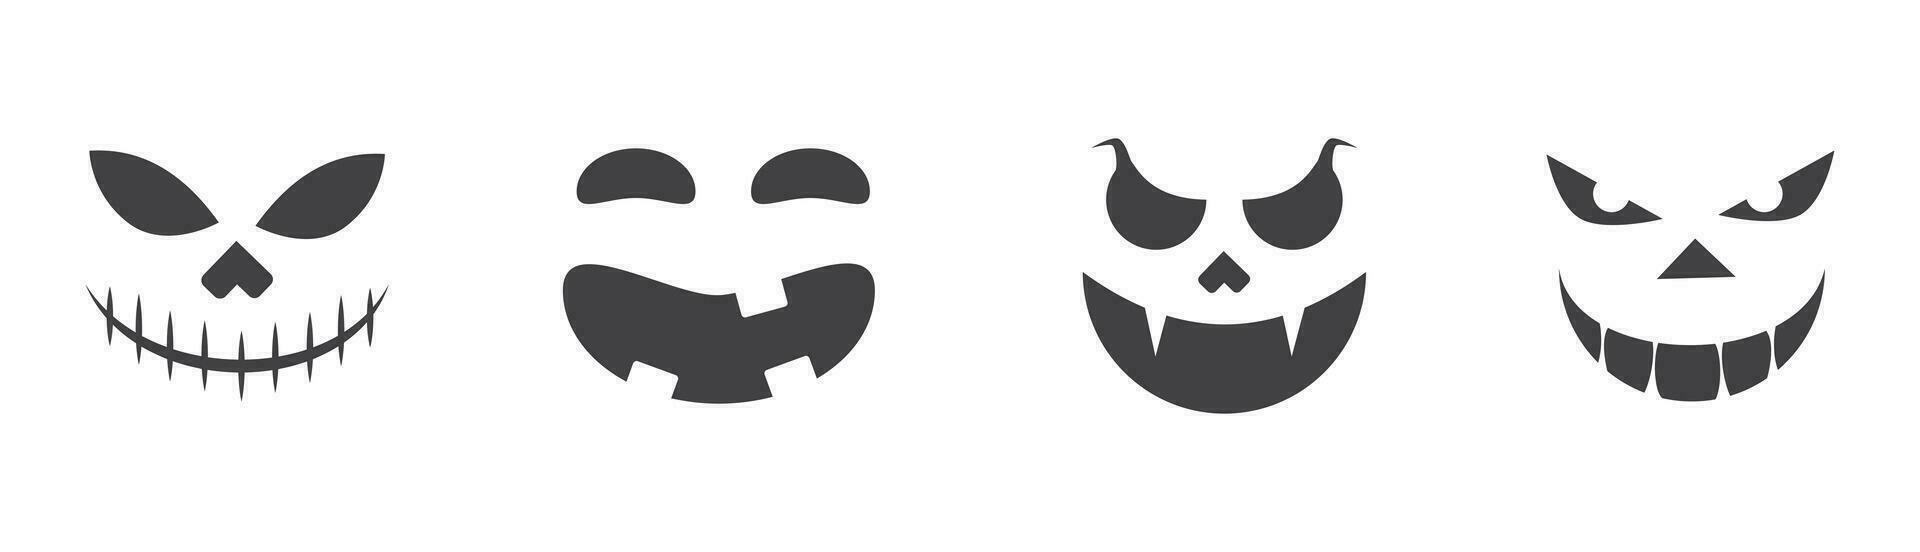 Jack Ö Laterne Monster- Gesicht Ausdruck einstellen von 4 im viele anders Variation traurig wütend unheimlich glücklich Emotion editierbar zum Halloween Inhalt Anlagegut vektor